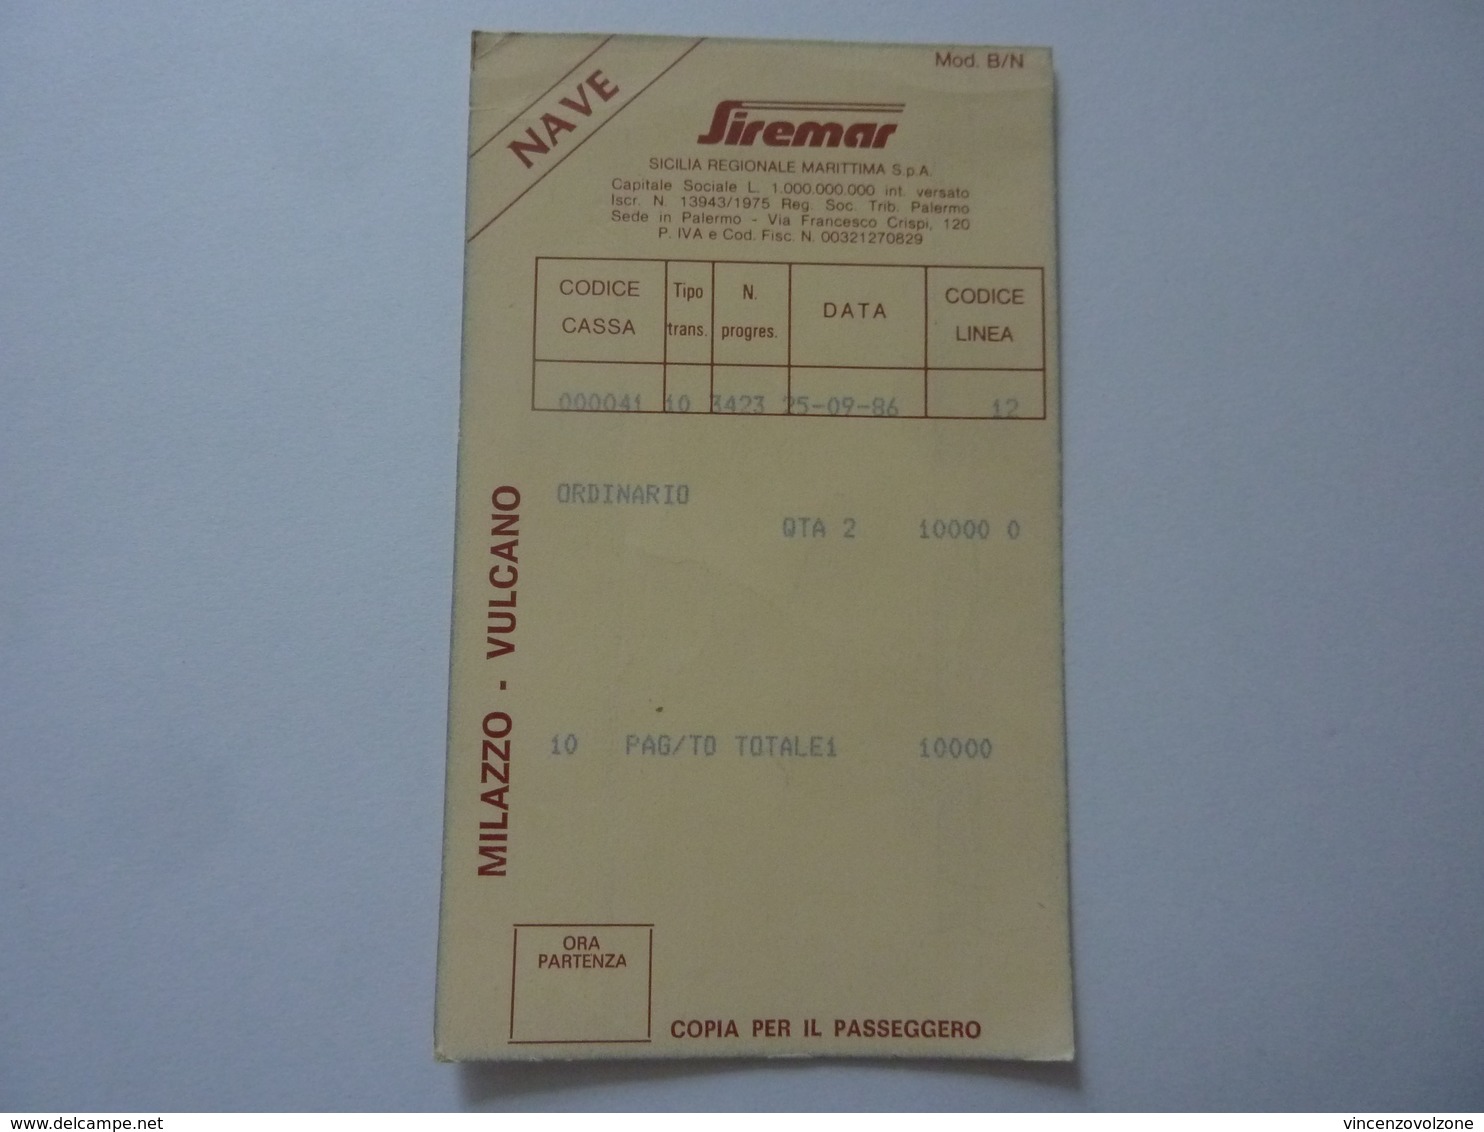 Biglietto "SIREMAR SICILIA REGIONALE MARITTIMA S.p.A. NAVE MILAZZO - VULCANO" 1986 - Europe